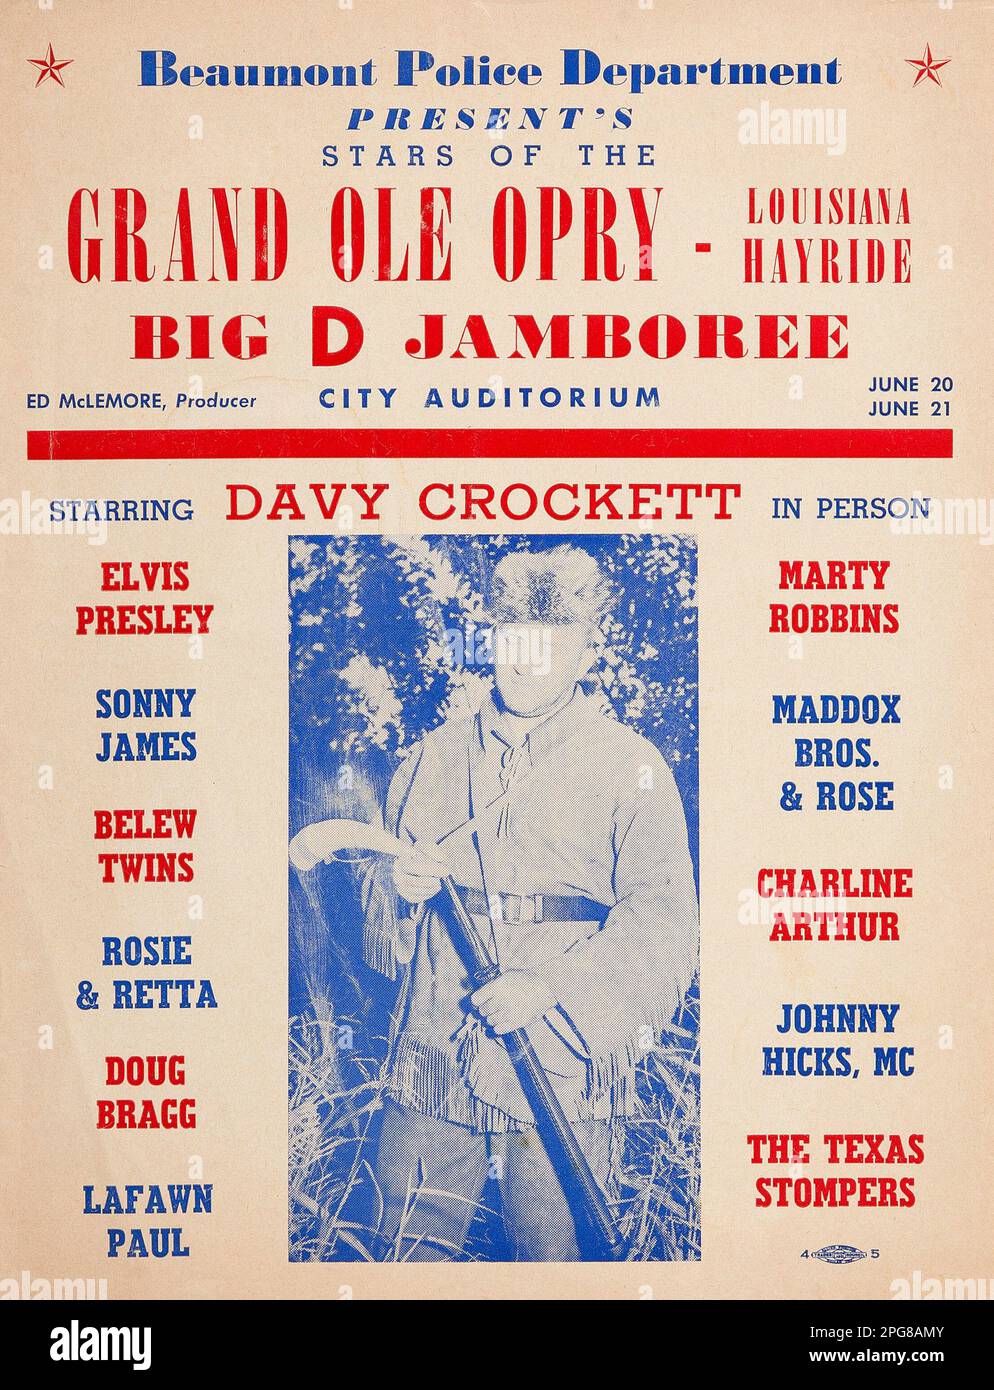 Il Dipartimento di polizia di Beaumont presenta le Stelle del Grand Ole Opry Louisiana Hayride, Big D Jamboree, con Davy Crockett e Elvis Presley. Programma di concerti dell'Auditorium della città (1955) Foto Stock